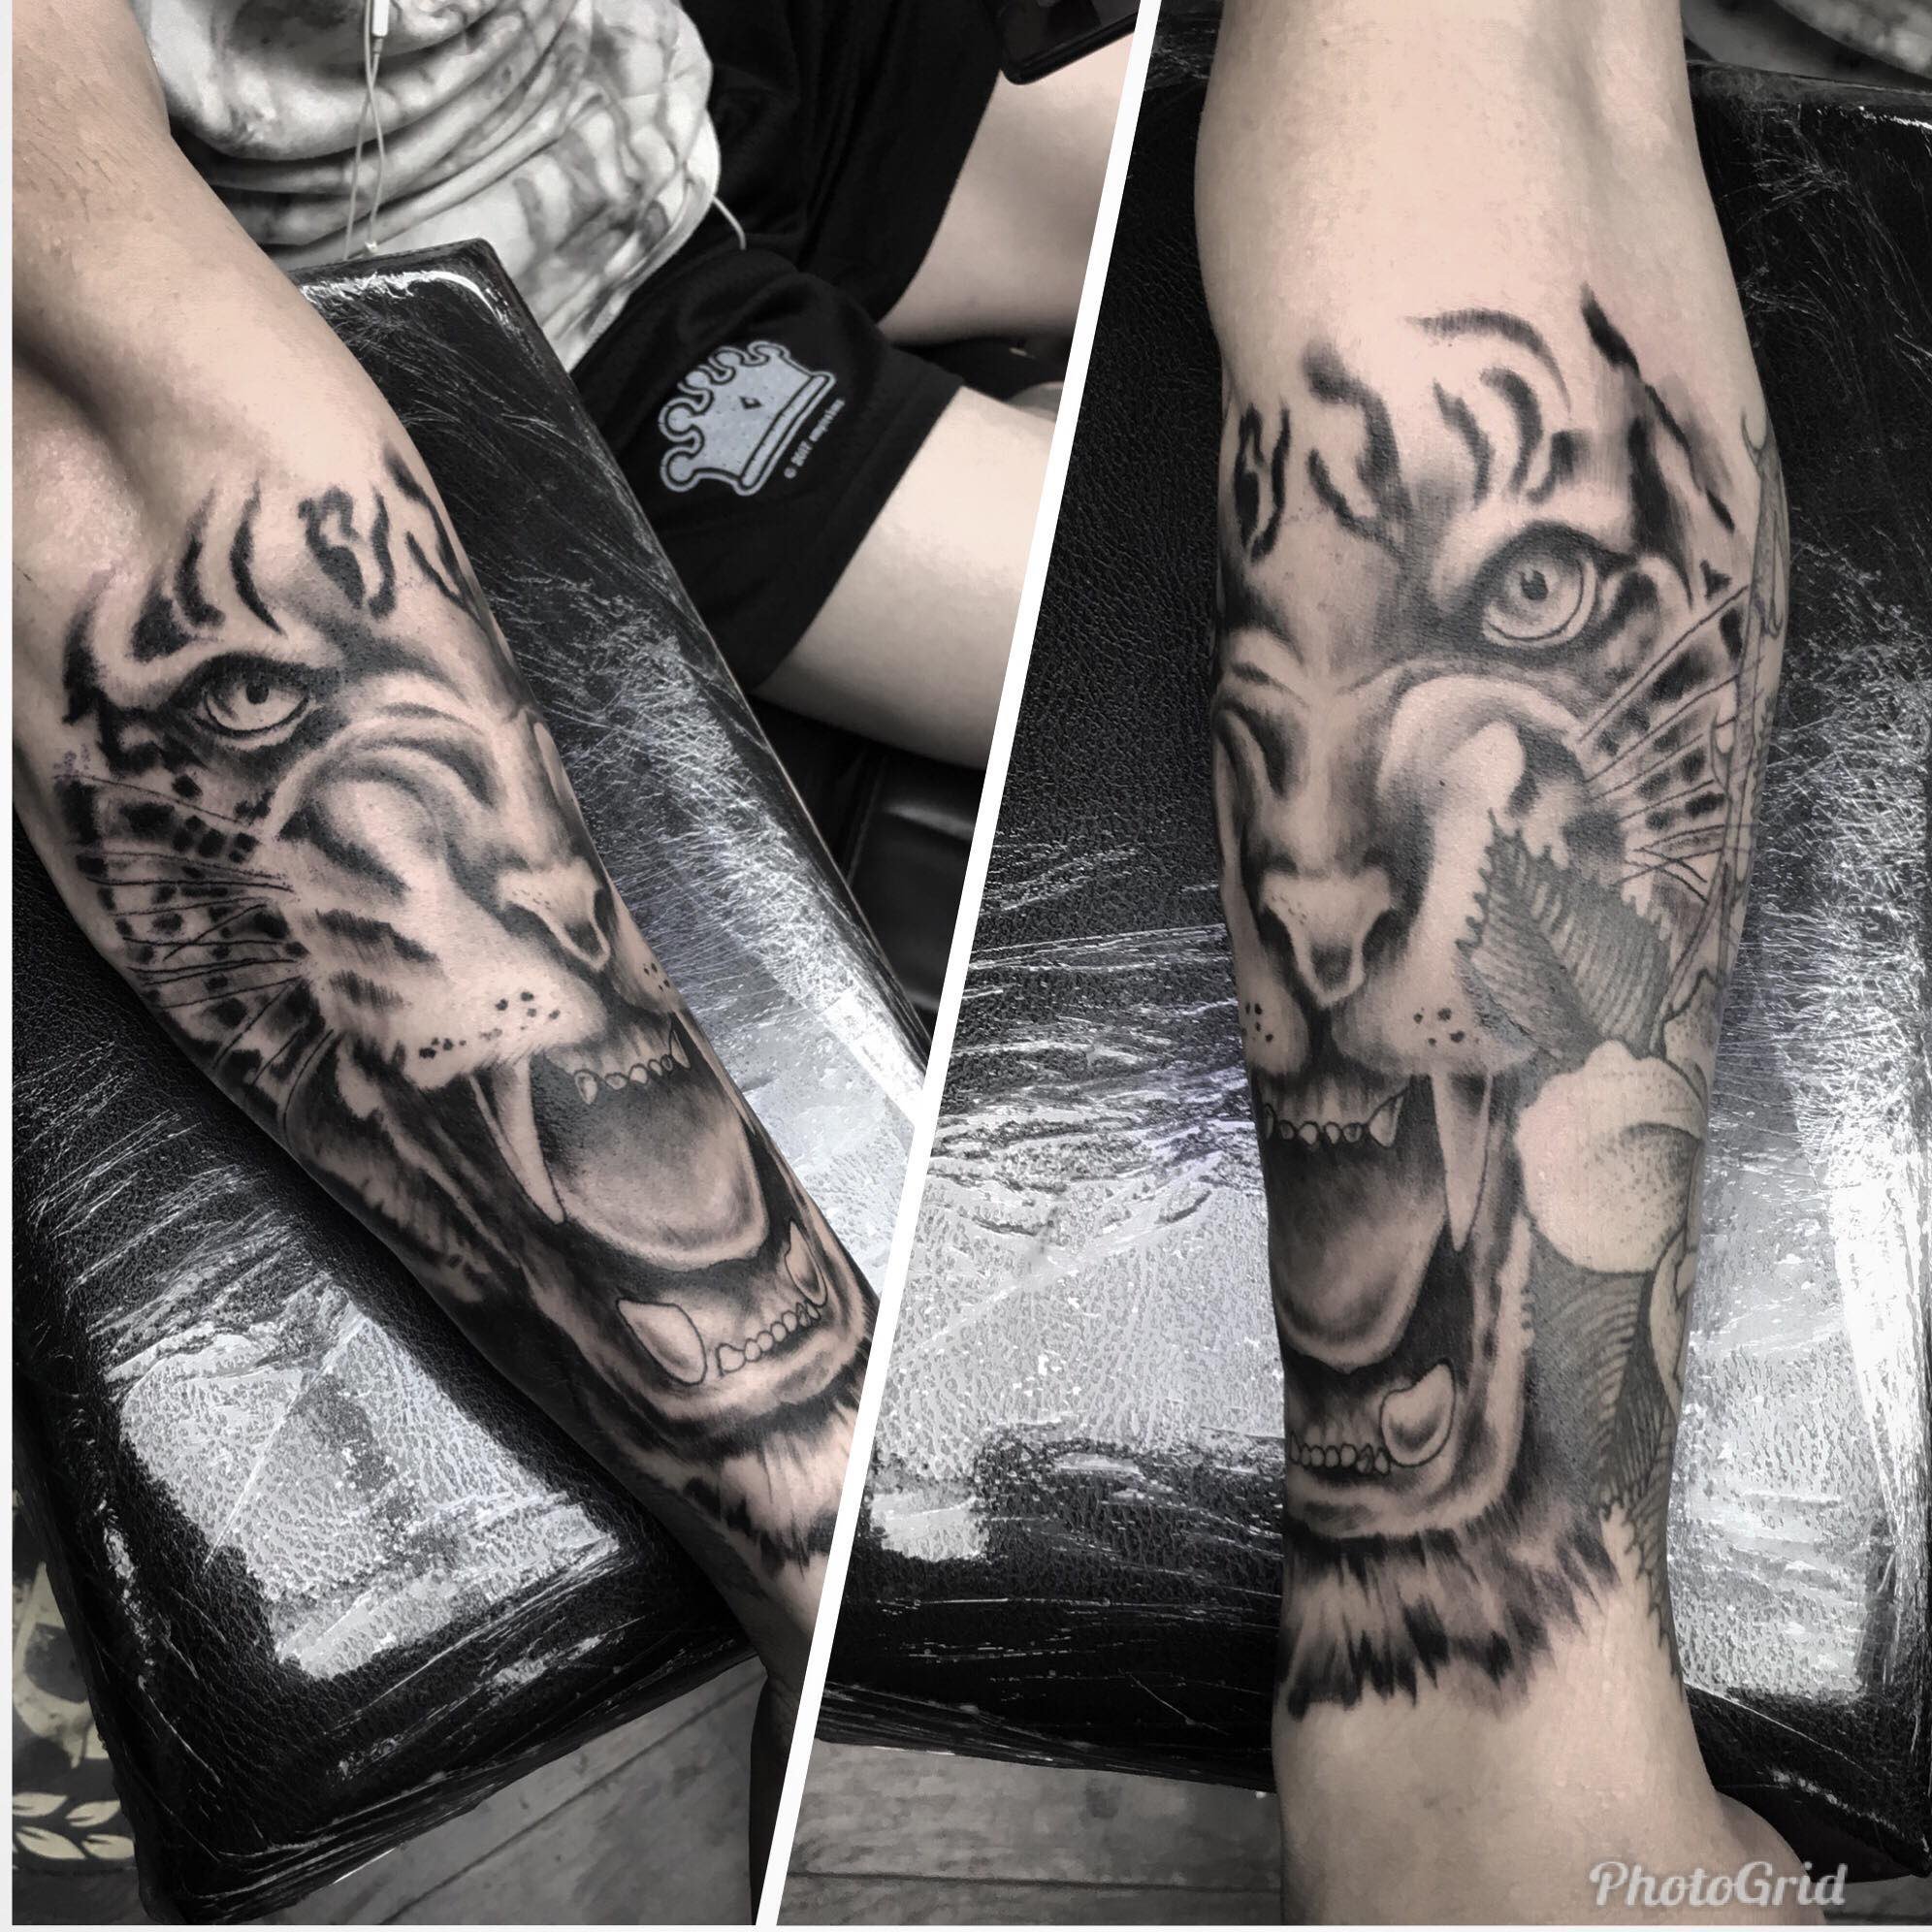 Tattoos Usmc tattoo Geometric sleeve tattoo